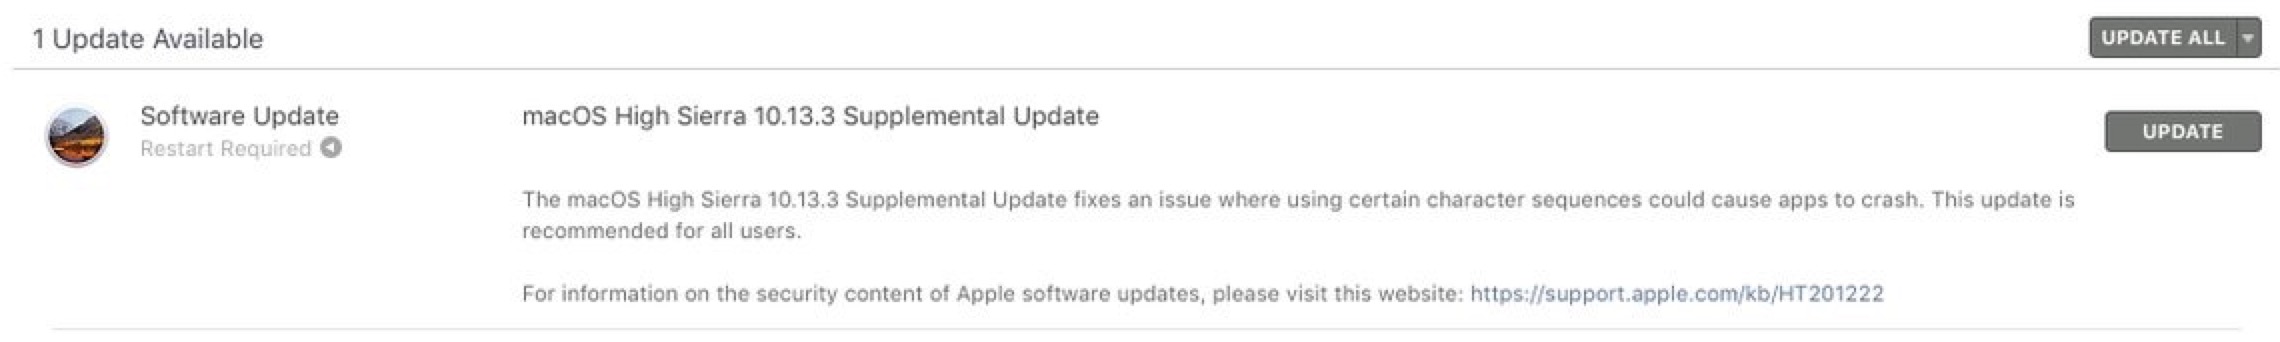 macOS 10.13.3 Supplemental Update